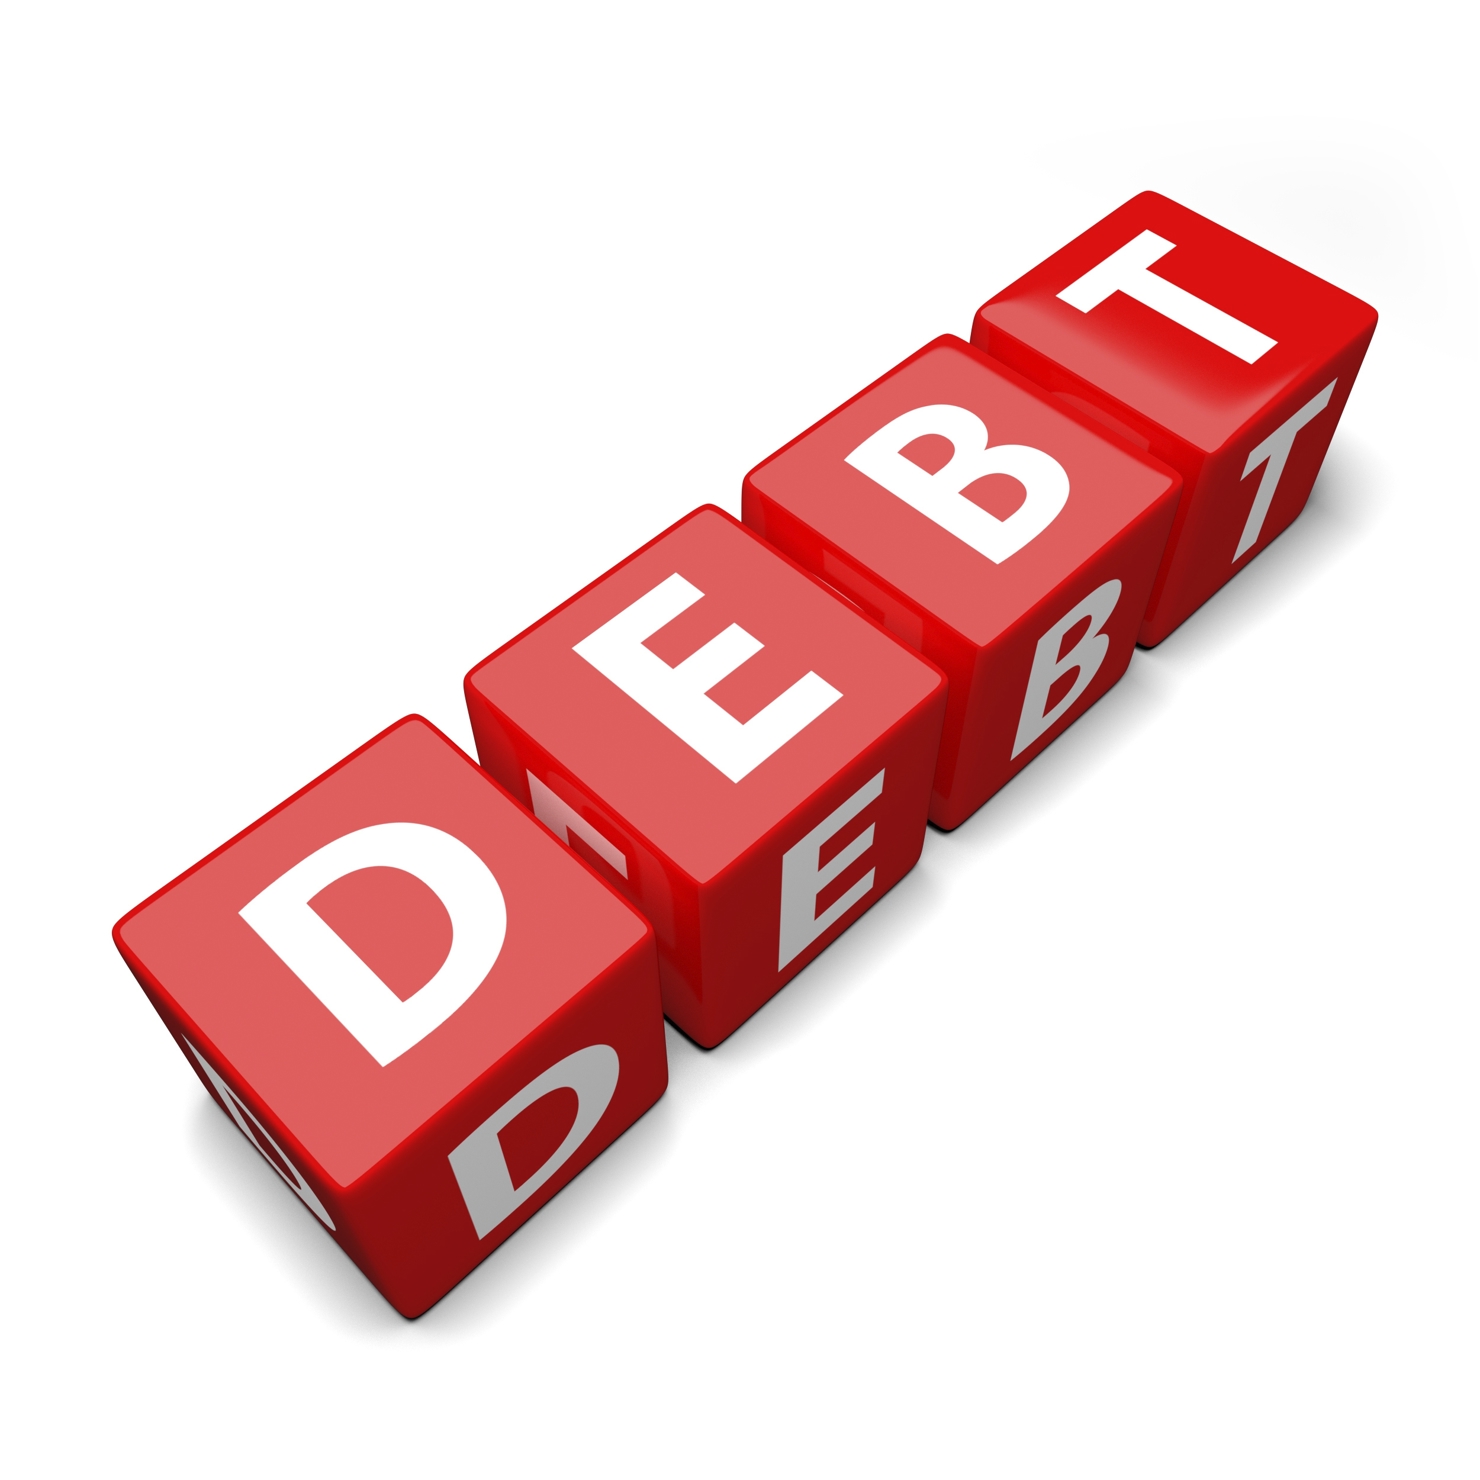 Xử lý nợ xấu vẫn chưa có nhiều tiến triển đáng kể. Nguồn: internet